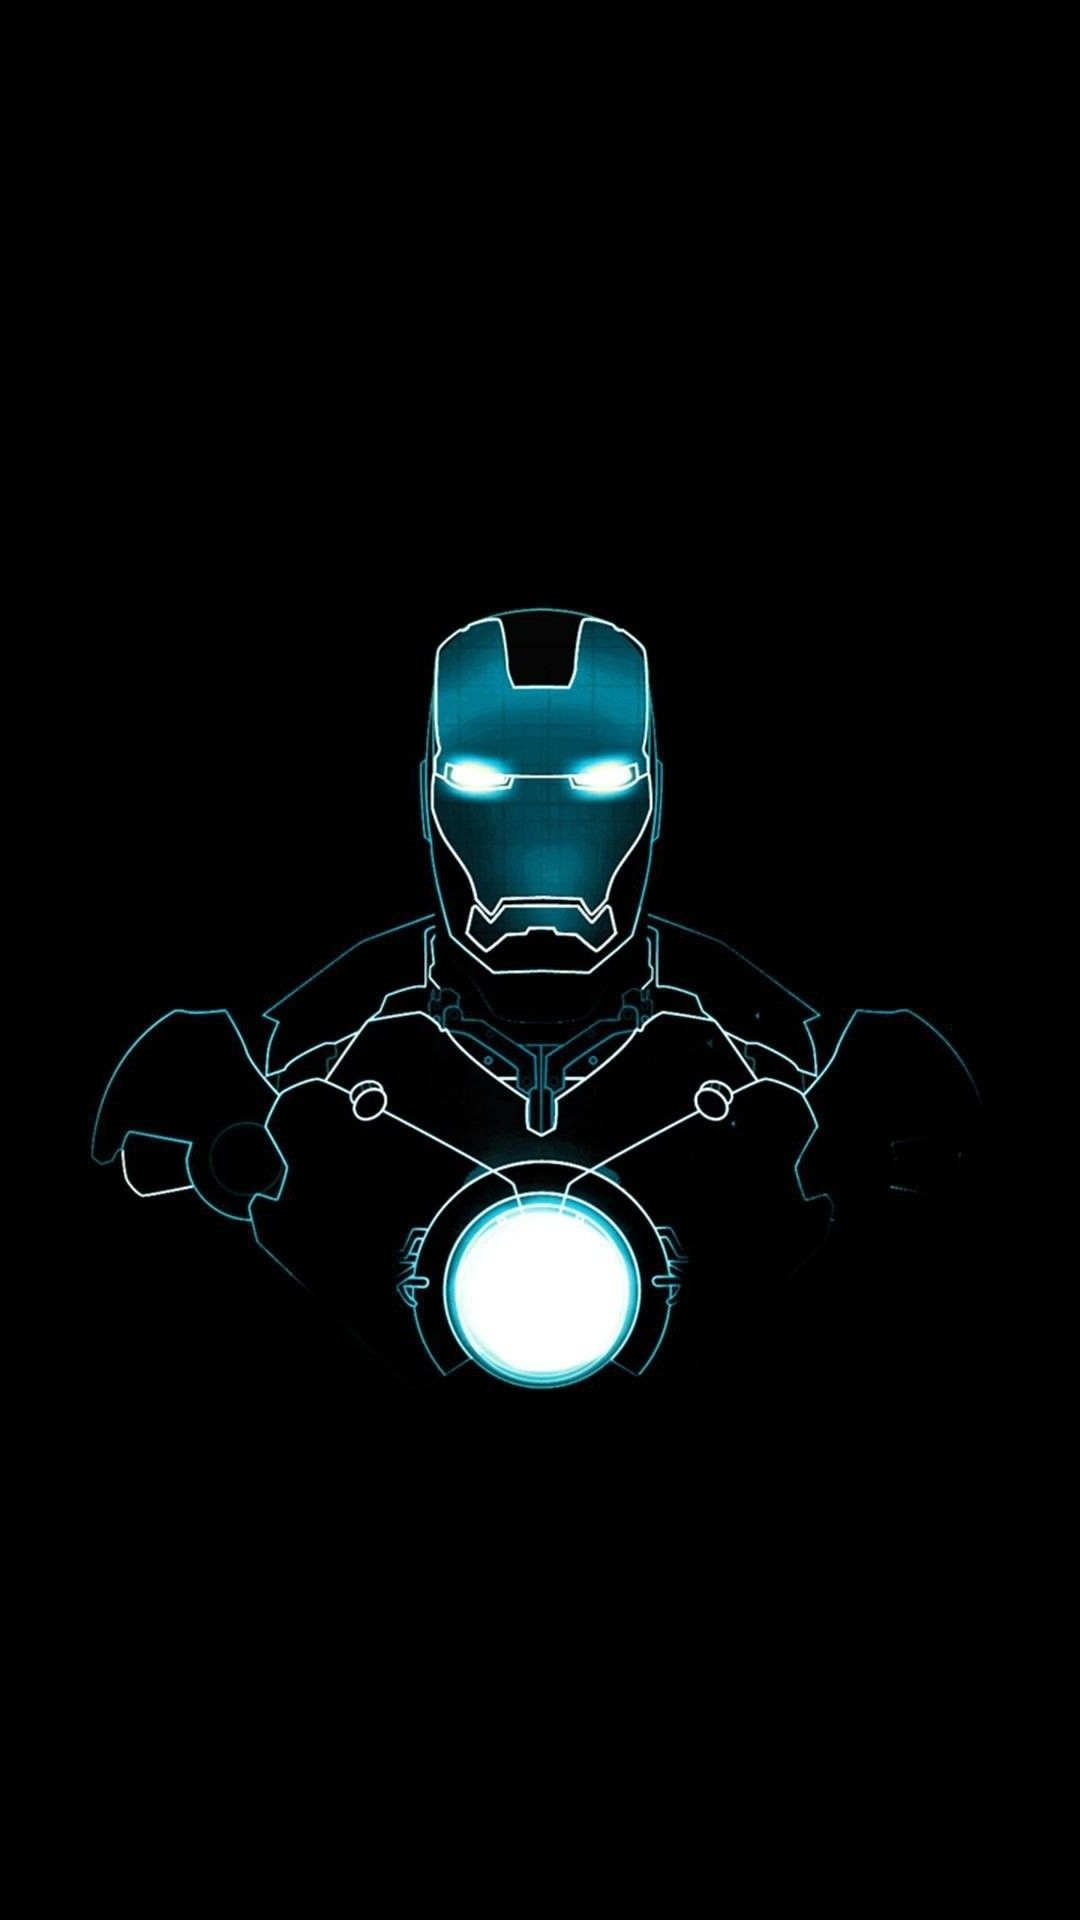 Ironman Wallpaper sẽ khiến bạn nổi bật giữa đám đông với những chi tiết tinh tế và sắc nét của nhân vật siêu anh hùng này. Bạn sẽ cảm thấy được sức mạnh khi sử dụng hình nền đặc biệt này cho máy tính và điện thoại của mình.